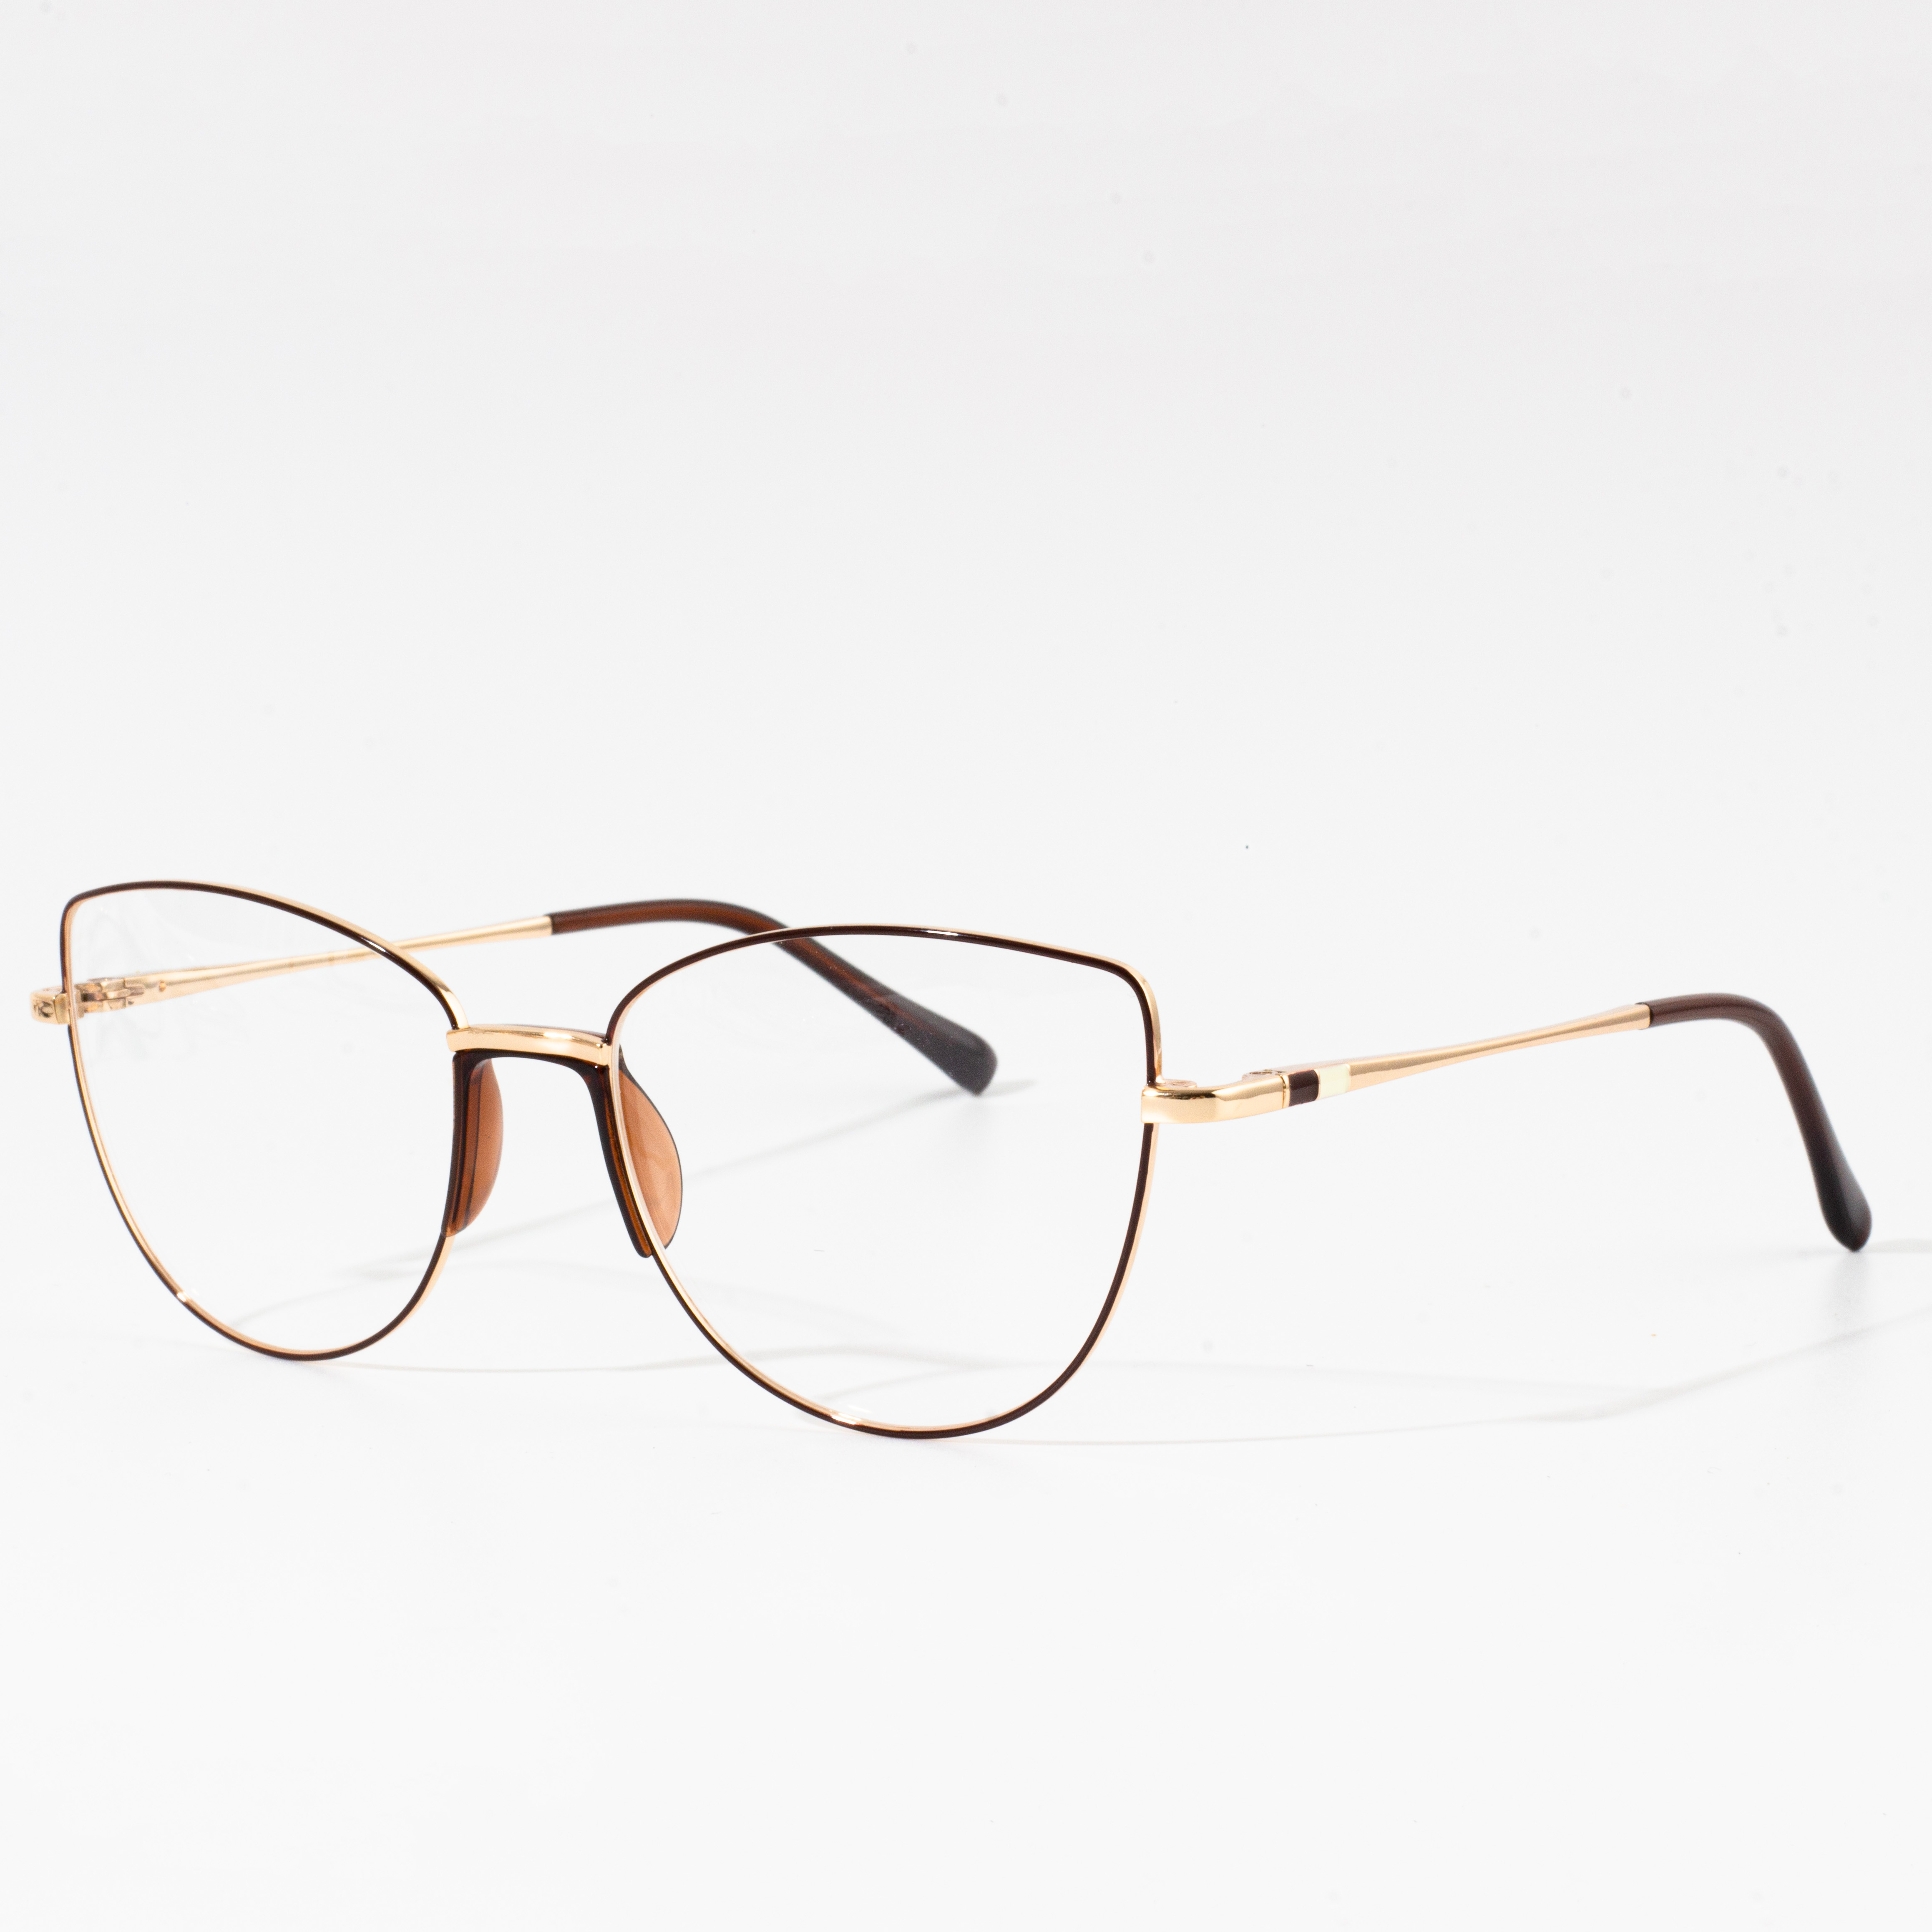 Round eyeglasses frames